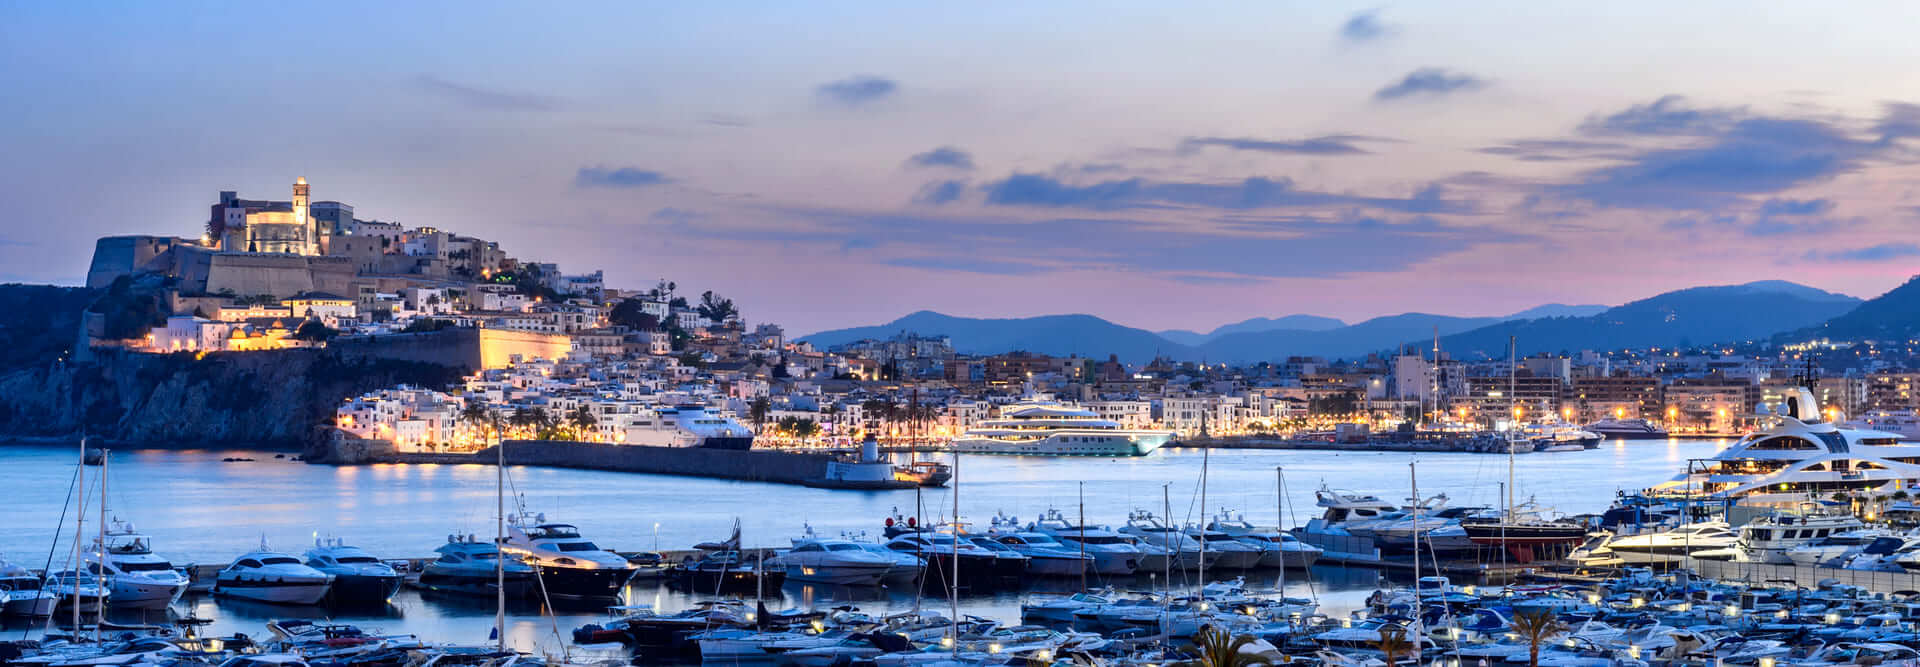 Ibiza, Spagna - 6 giugno 2016: Vista panoramica della città di Ibiza e del suo porto al tramonto. La zona monumentale di Dalt Vila, patrimonio dell'umanità dal 1999. Il porto ospita grandi yacht.